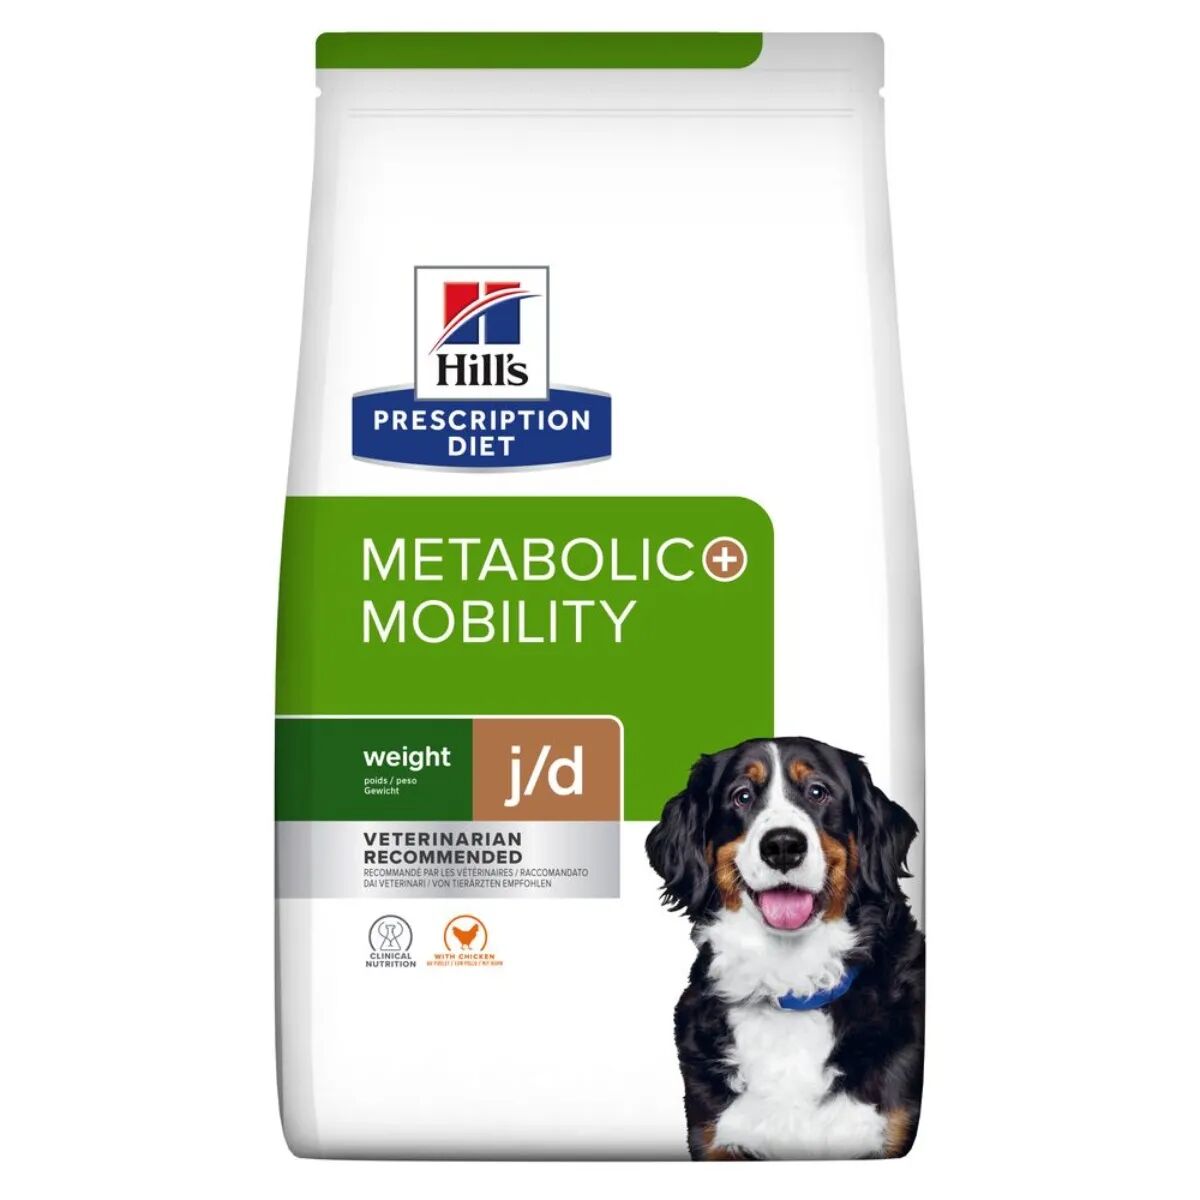 hills hill's prescription diet metabolic + mobility alimento secco per cani 12kg